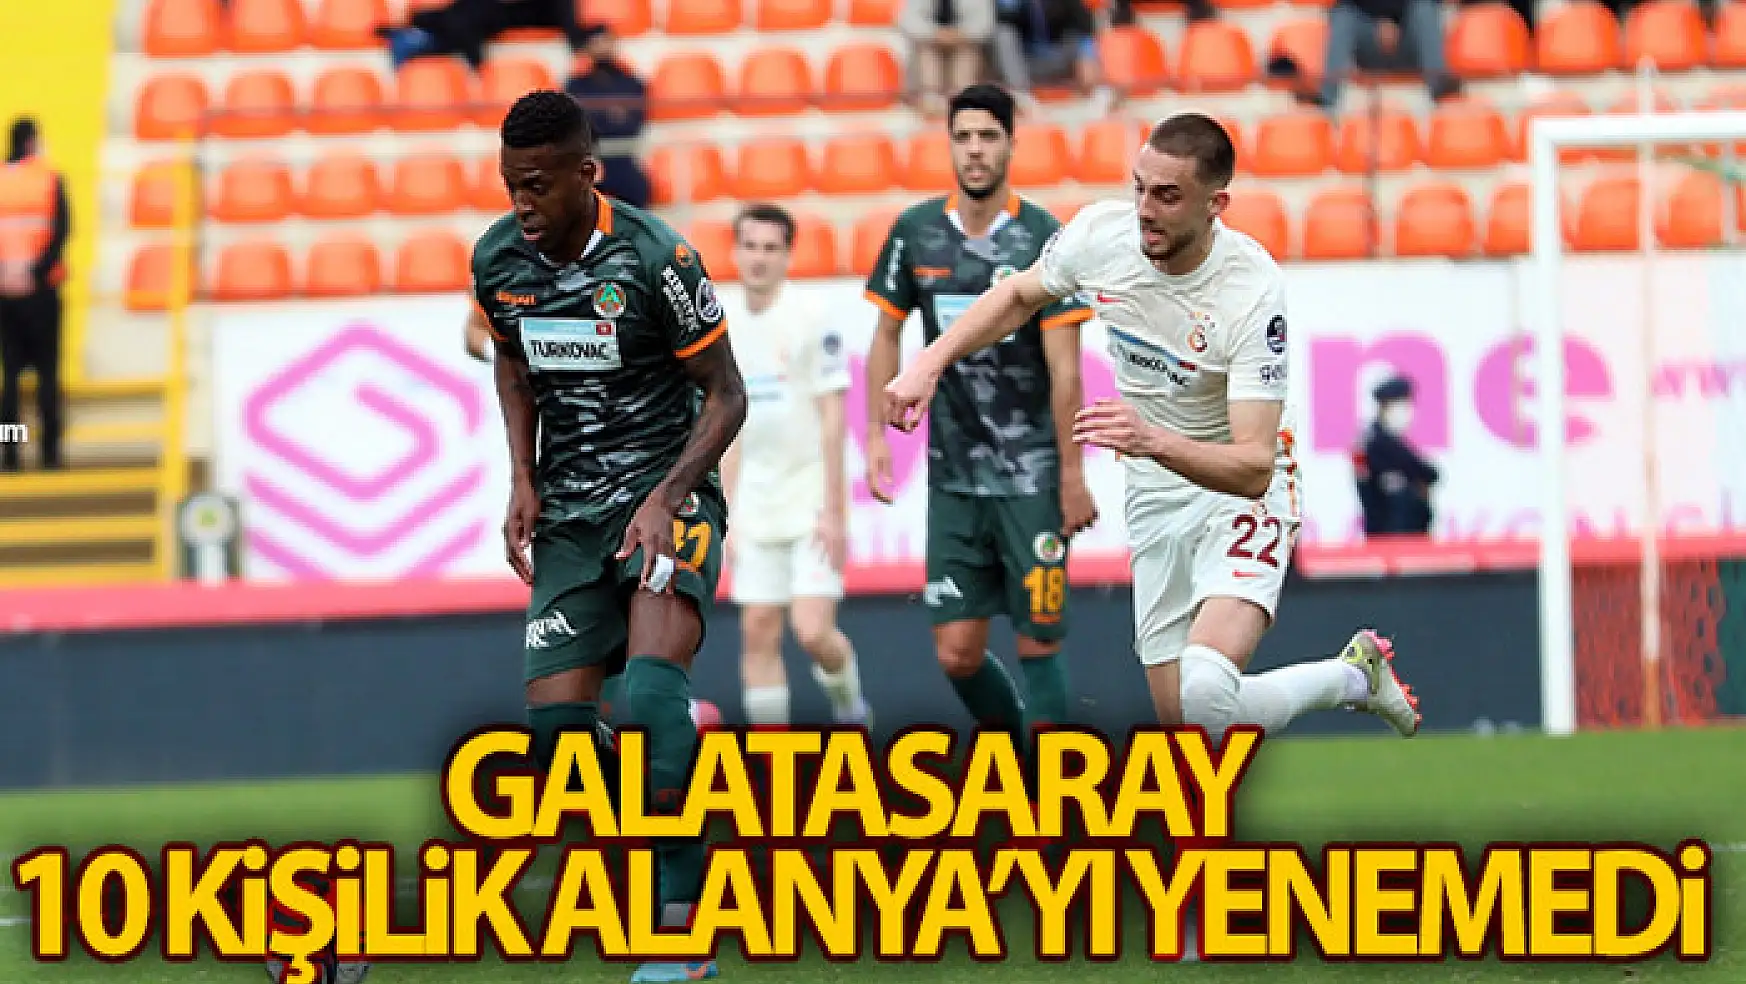 Galatasaray 10 kişilik Alanya'yı yenemedi